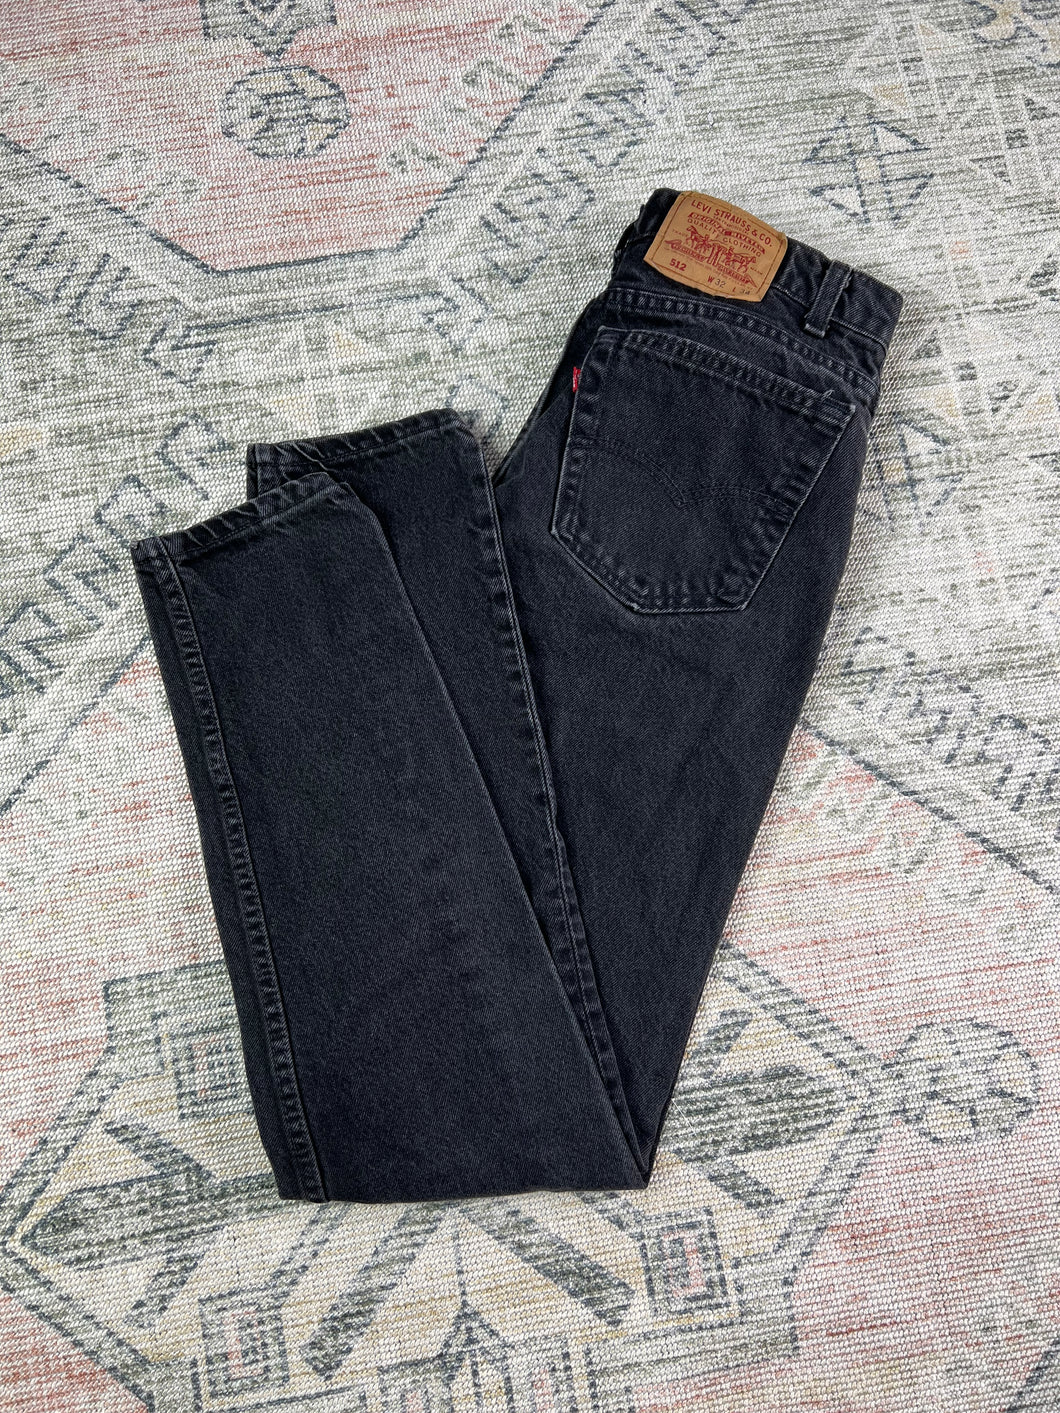 Vintage 90s Levi’s 512 Black Jeans (32x33.5)